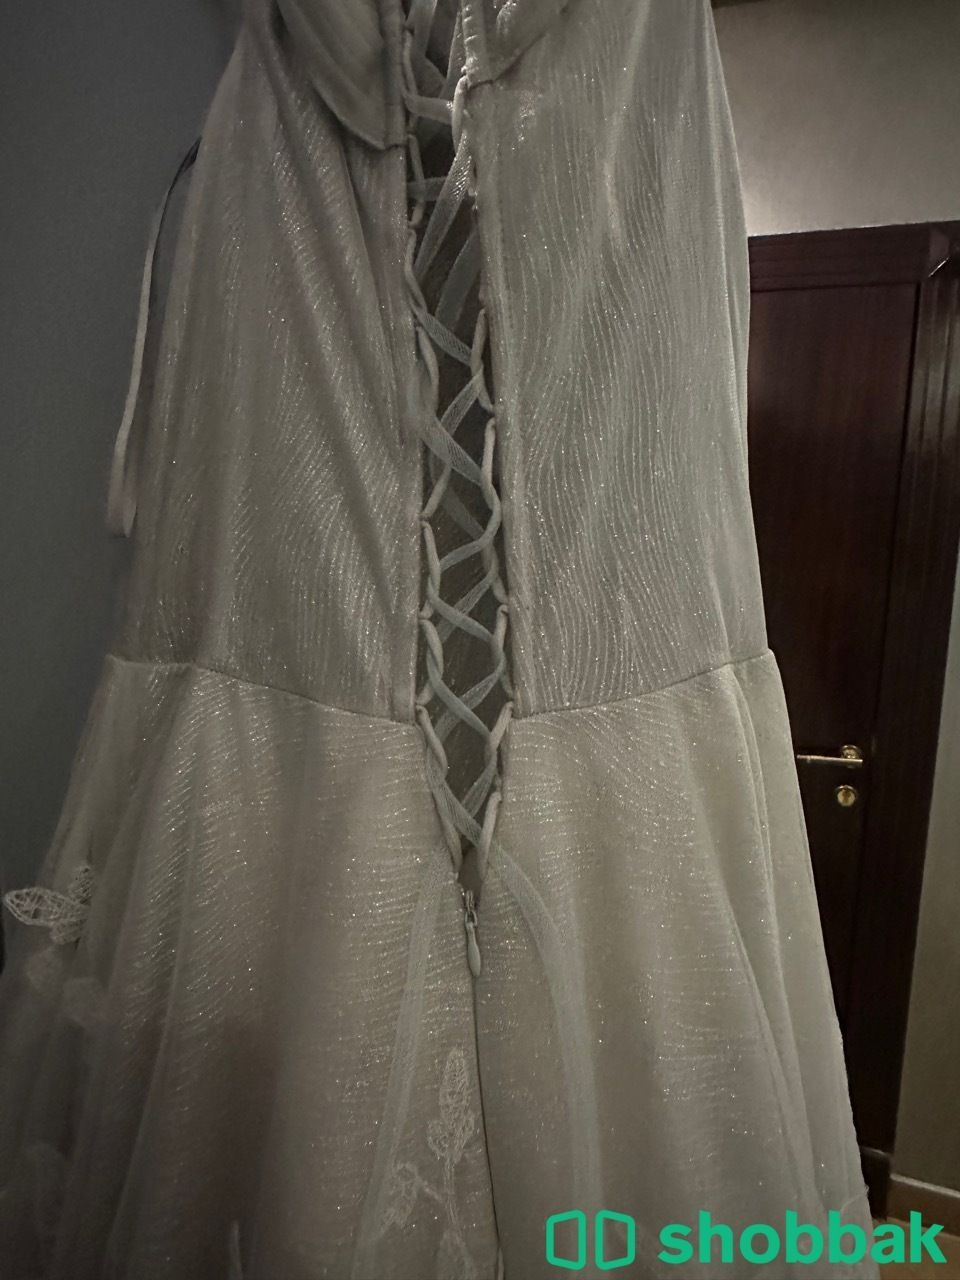 فستان Shobbak Saudi Arabia